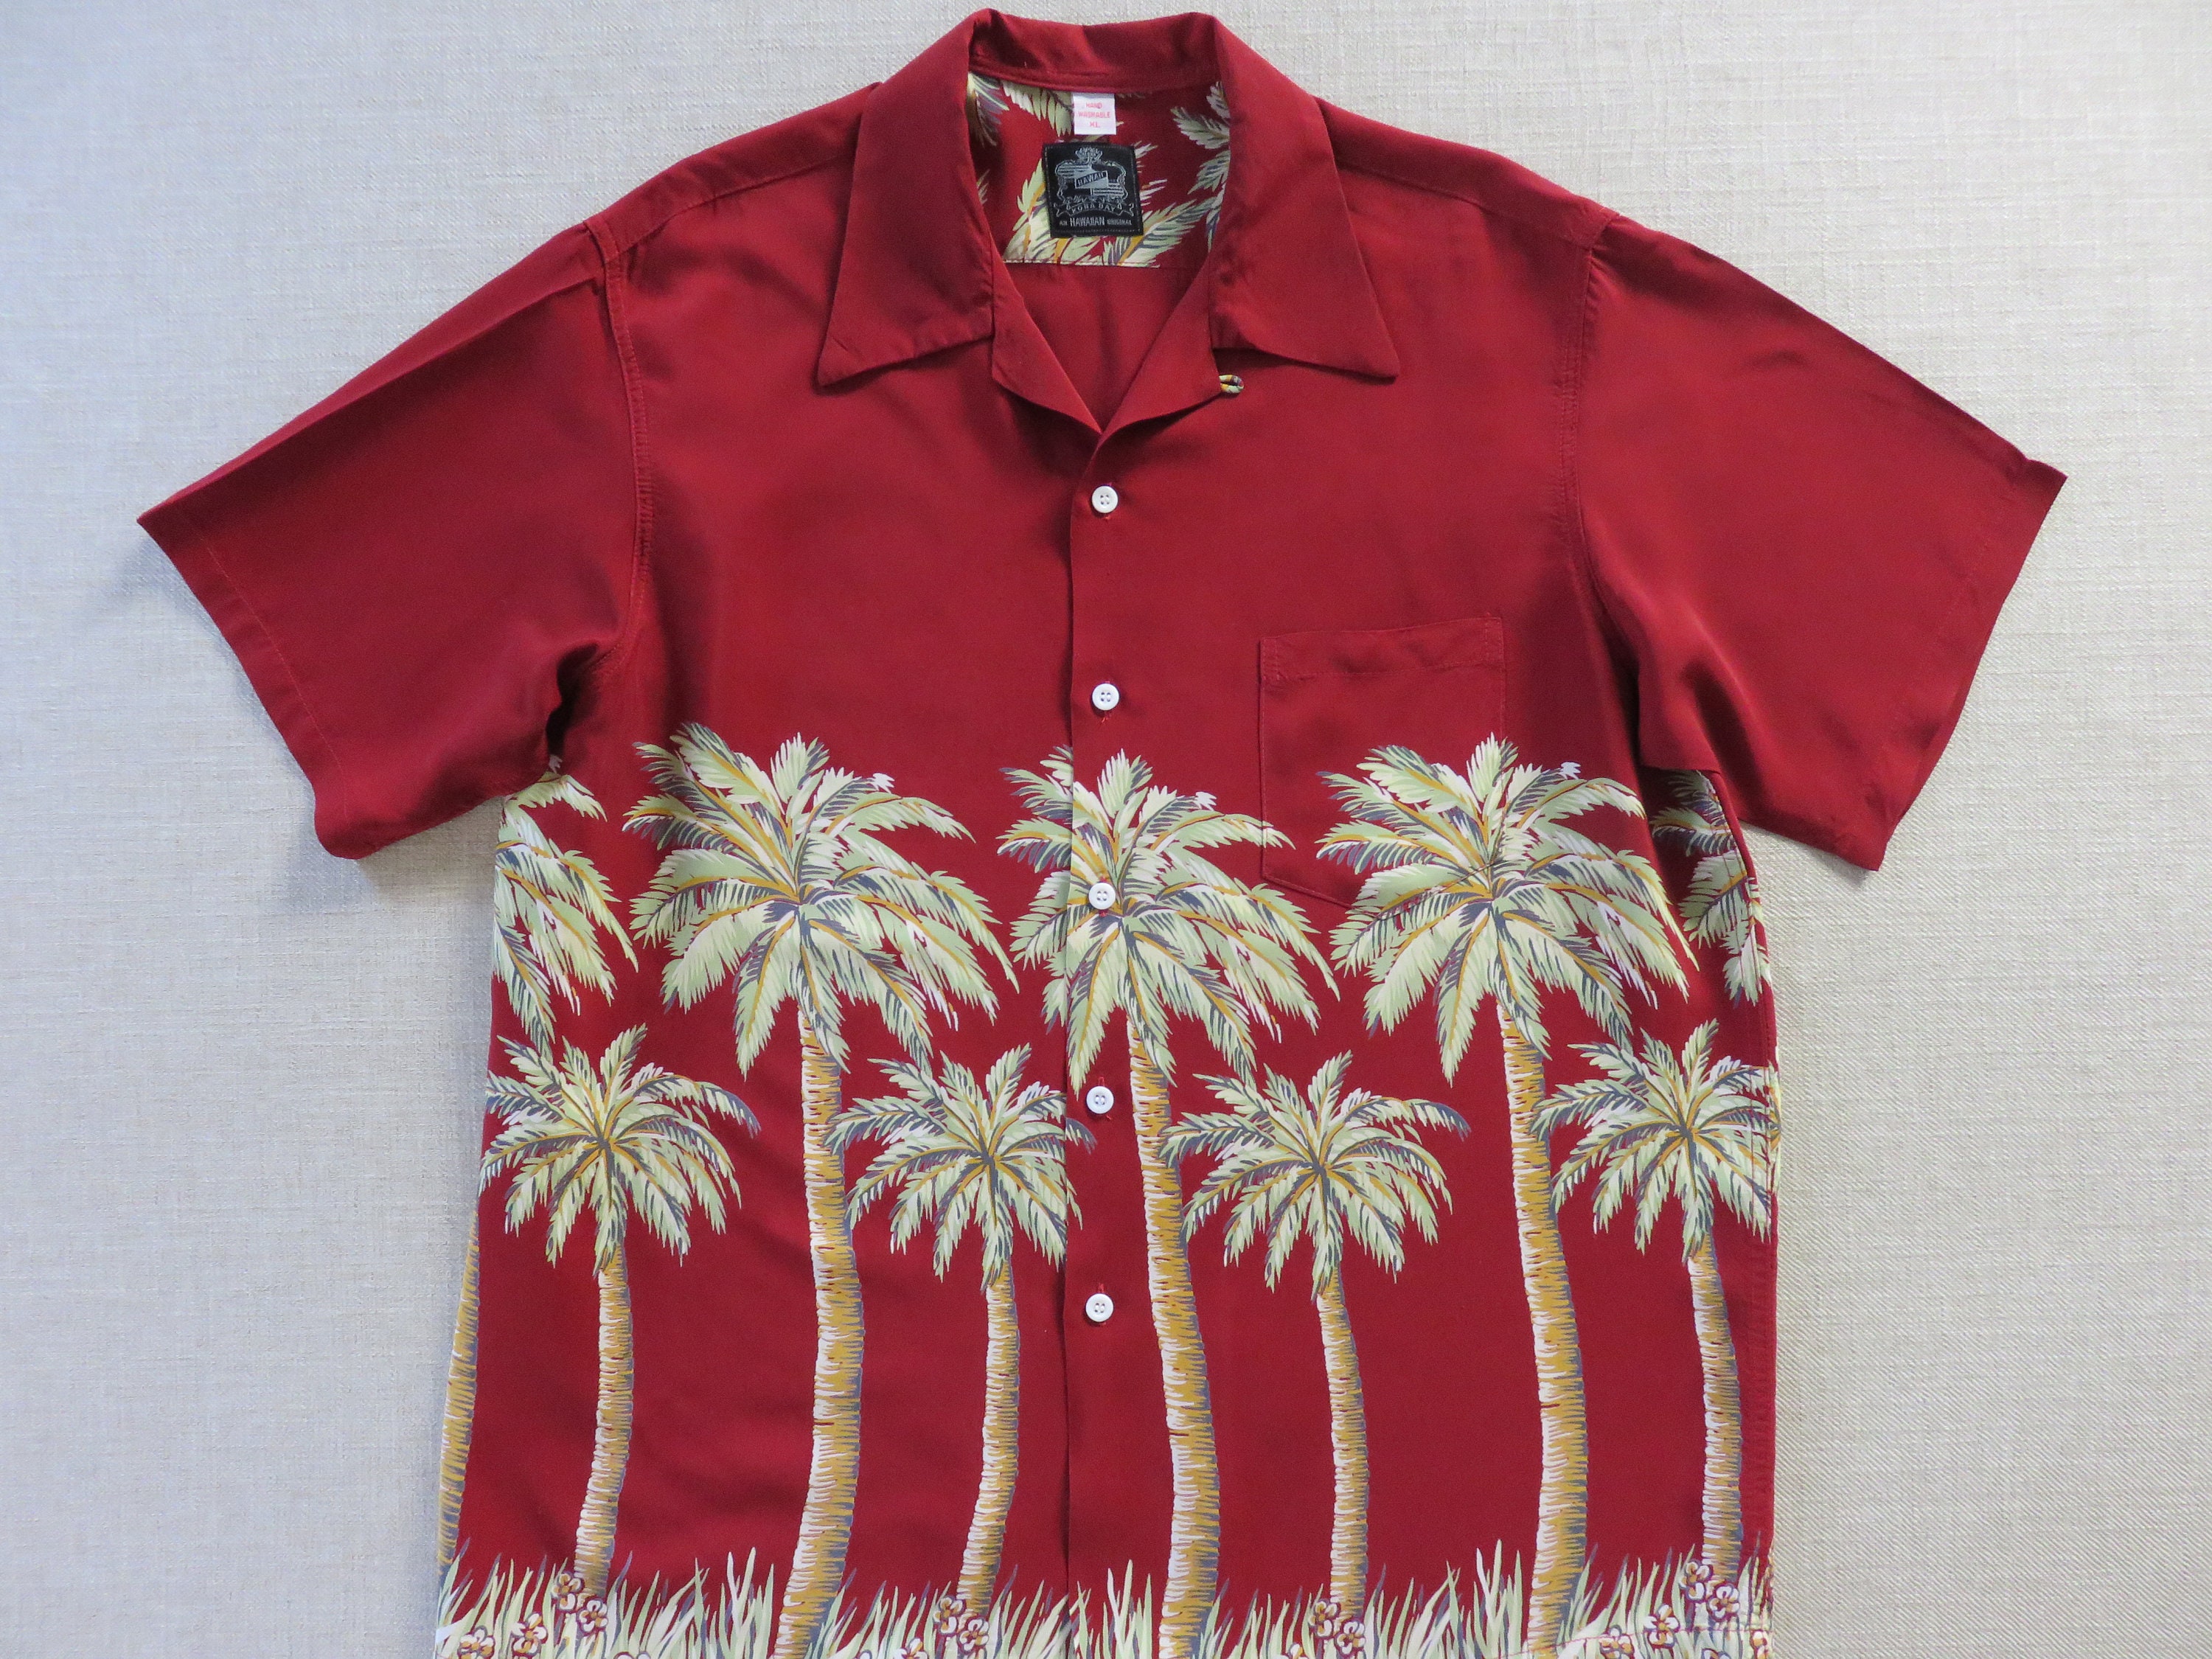 Arizona Diamondbacks Hawaiian Shirt TYSON Chicken Giveaway 